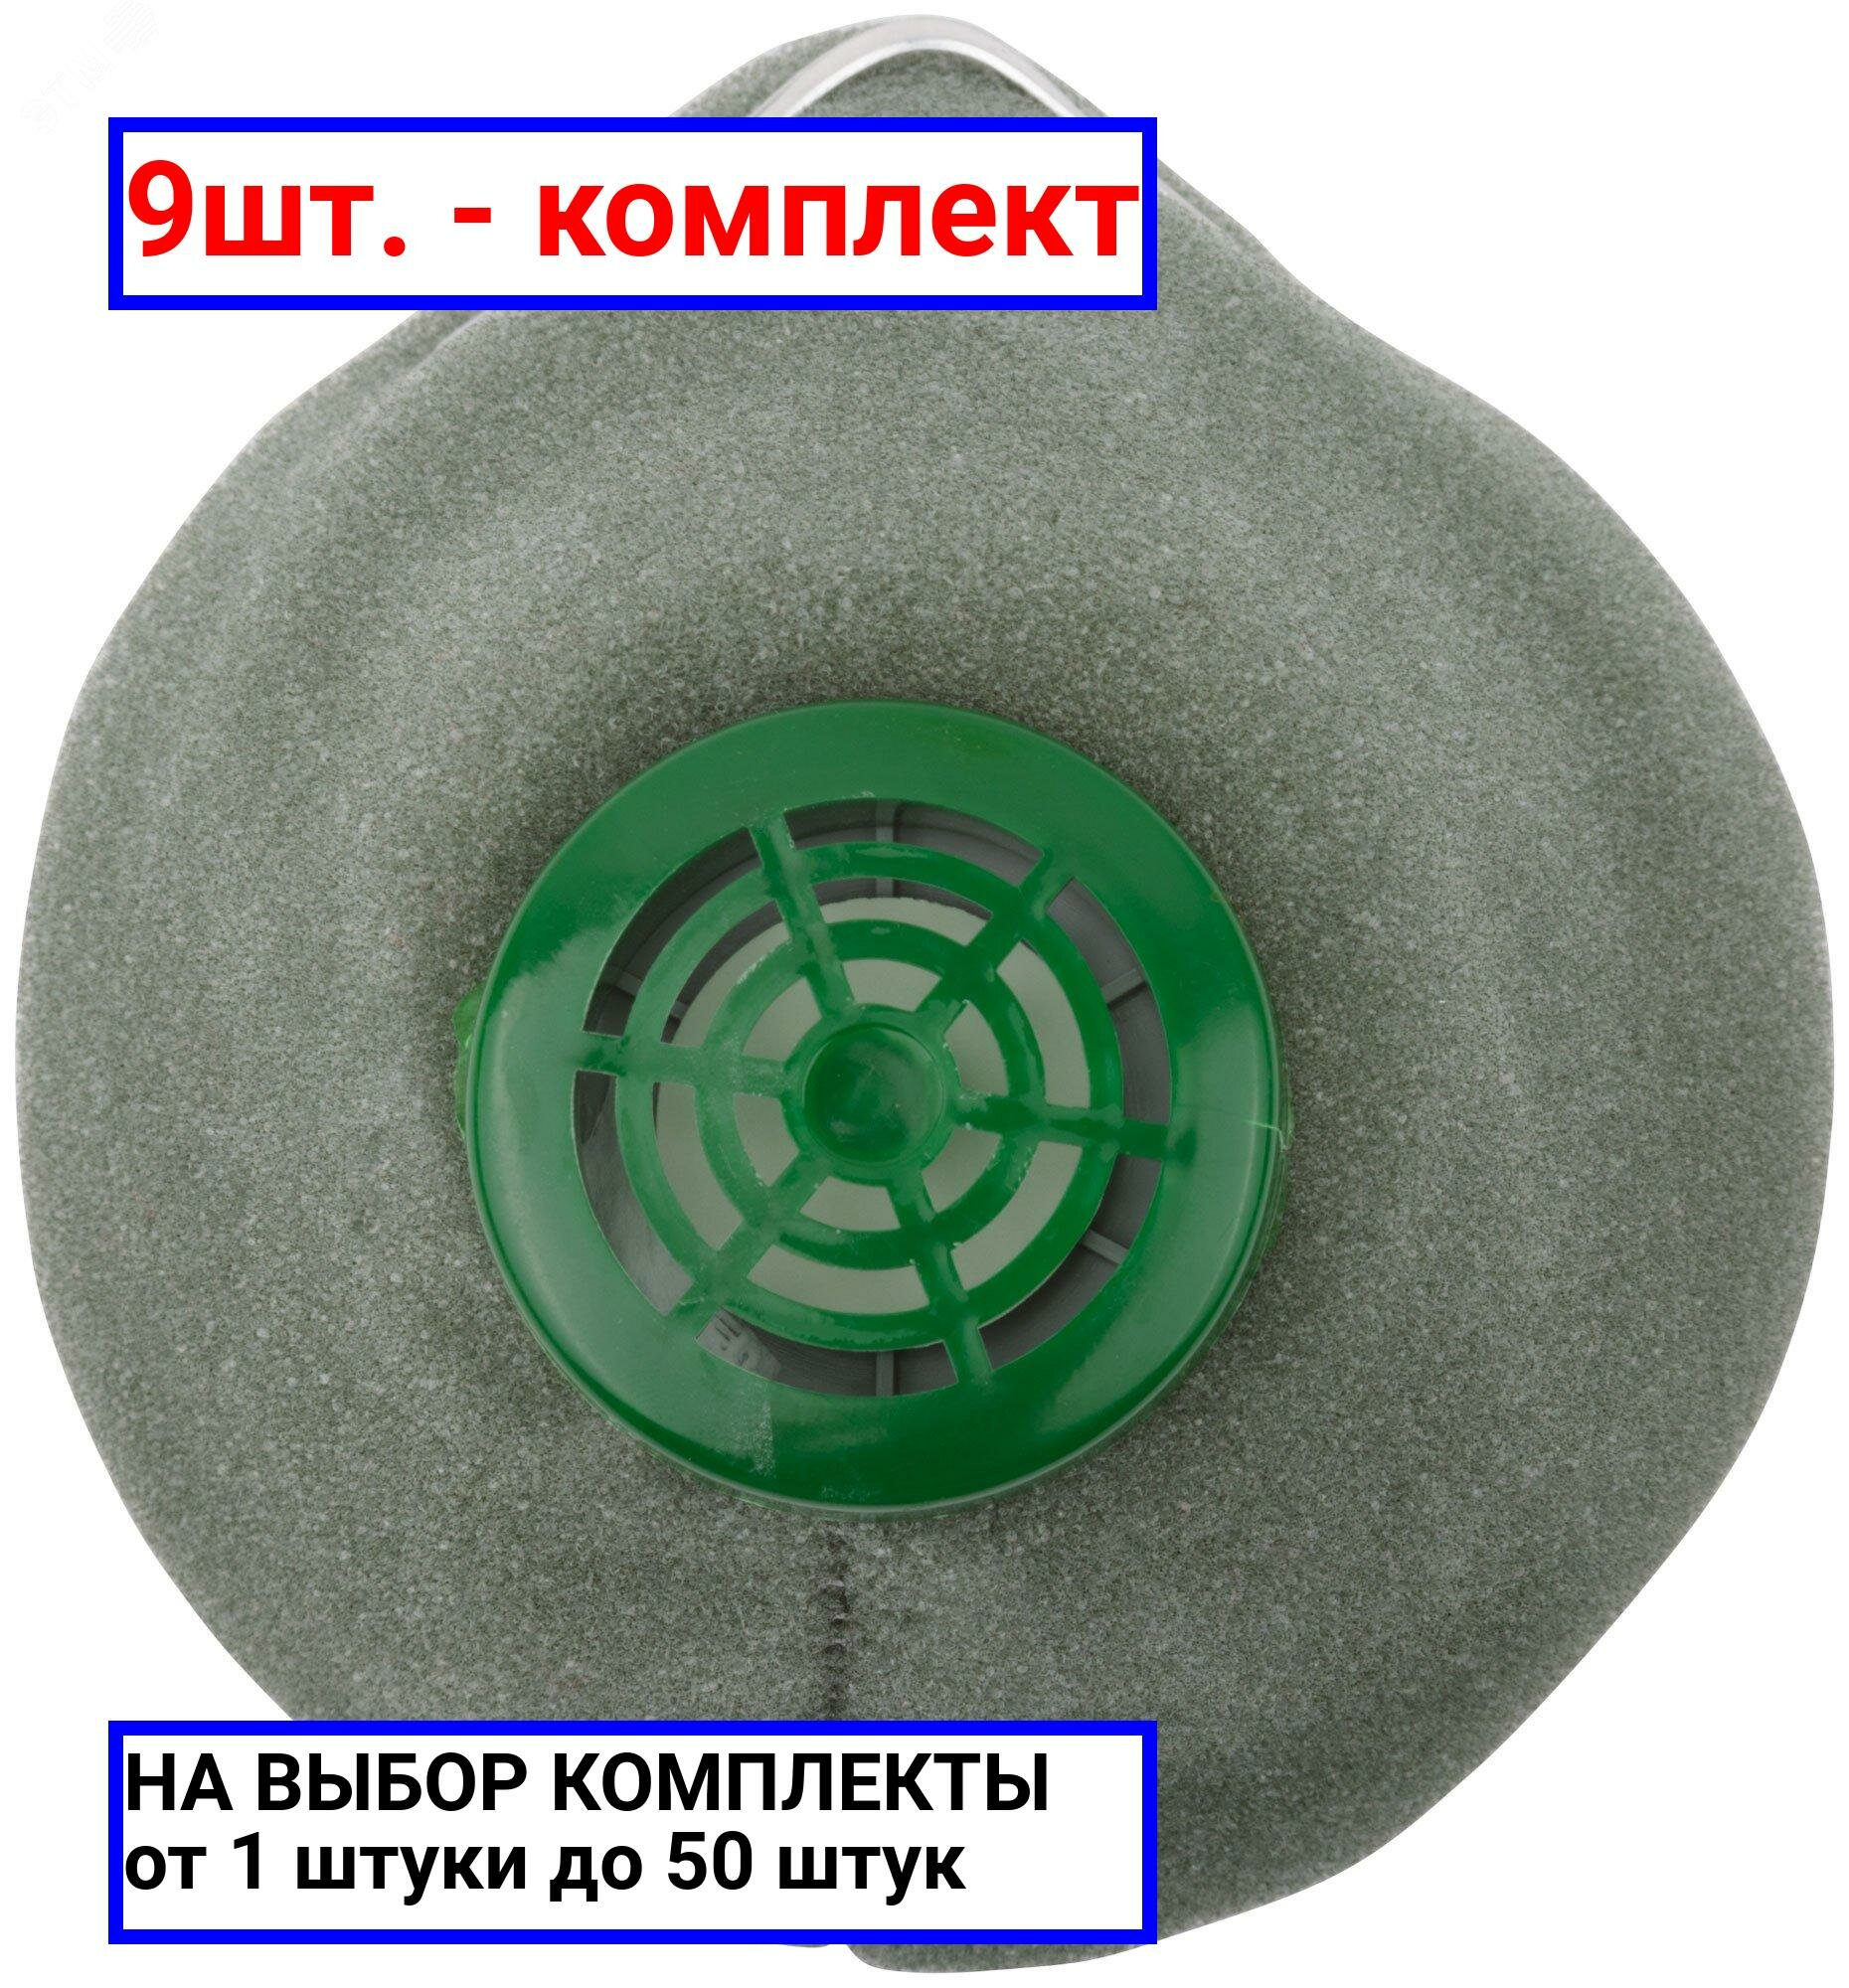 9шт. - Респиратор пылезащитный У-2К / РОС; арт. 12385; оригинал / - комплект 9шт